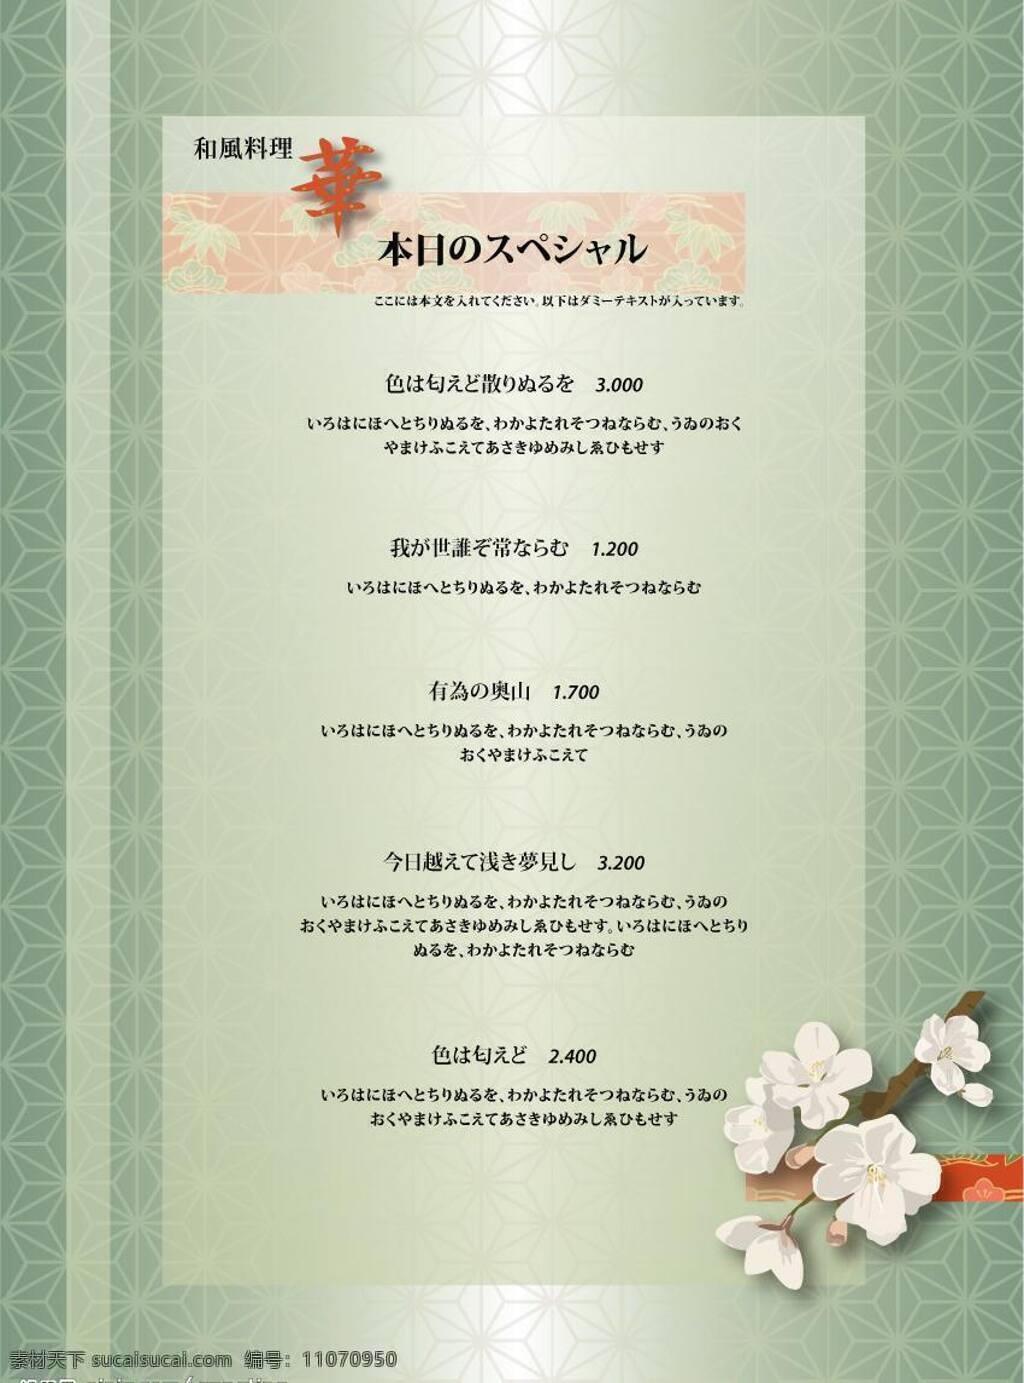 日式 餐厅 特色菜 矢量图库 矢量 模板下载 日式模板旅游 建筑家居